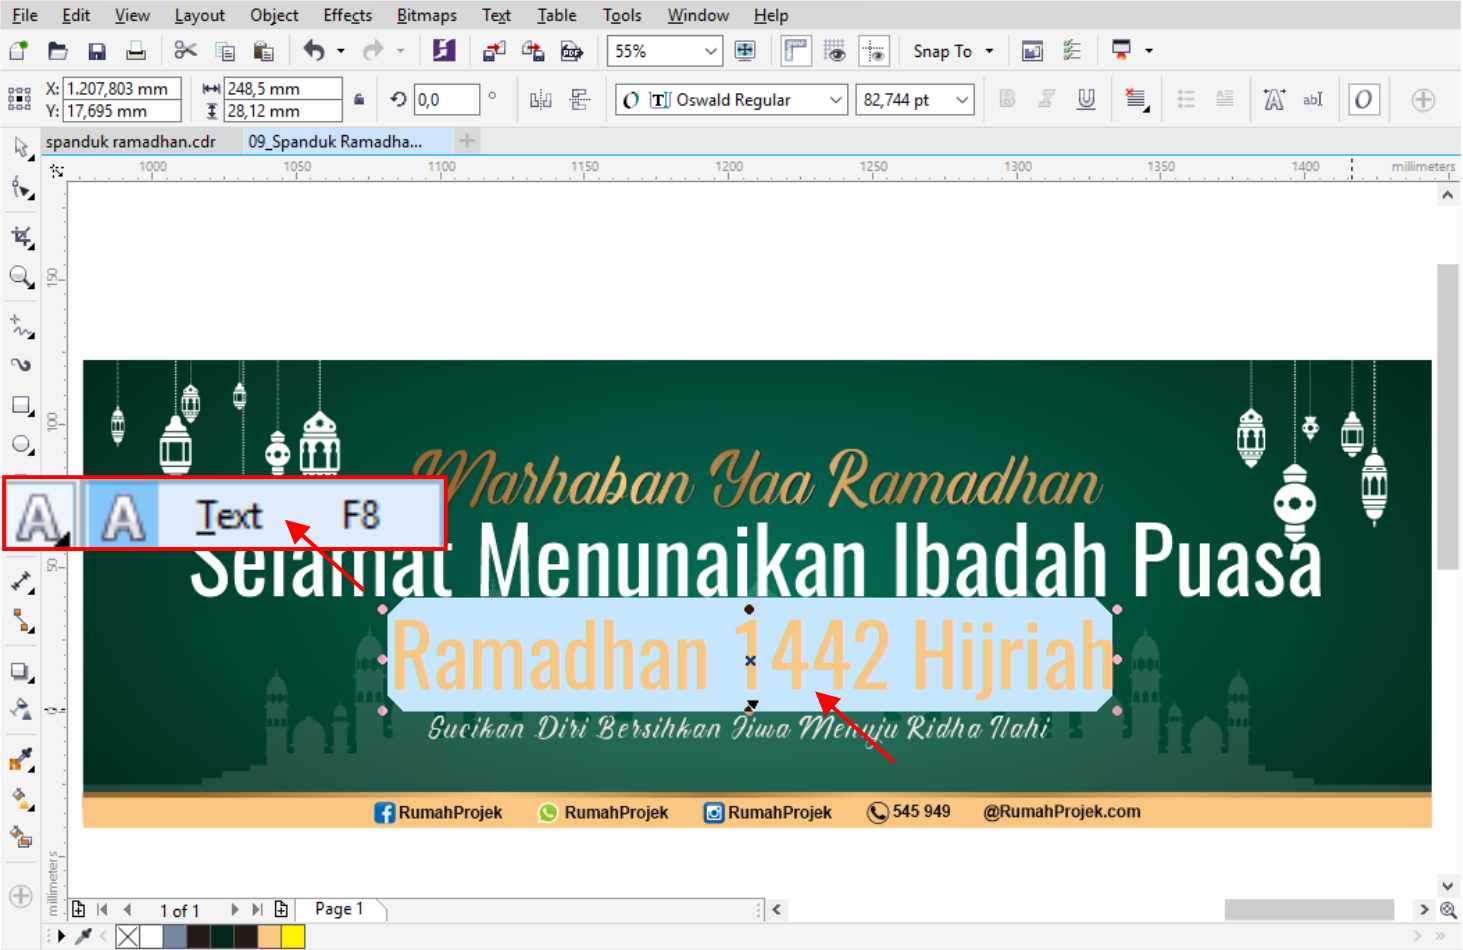  Download  Background Spanduk  Ramadhan  CDR CorelDraw  Gratis  